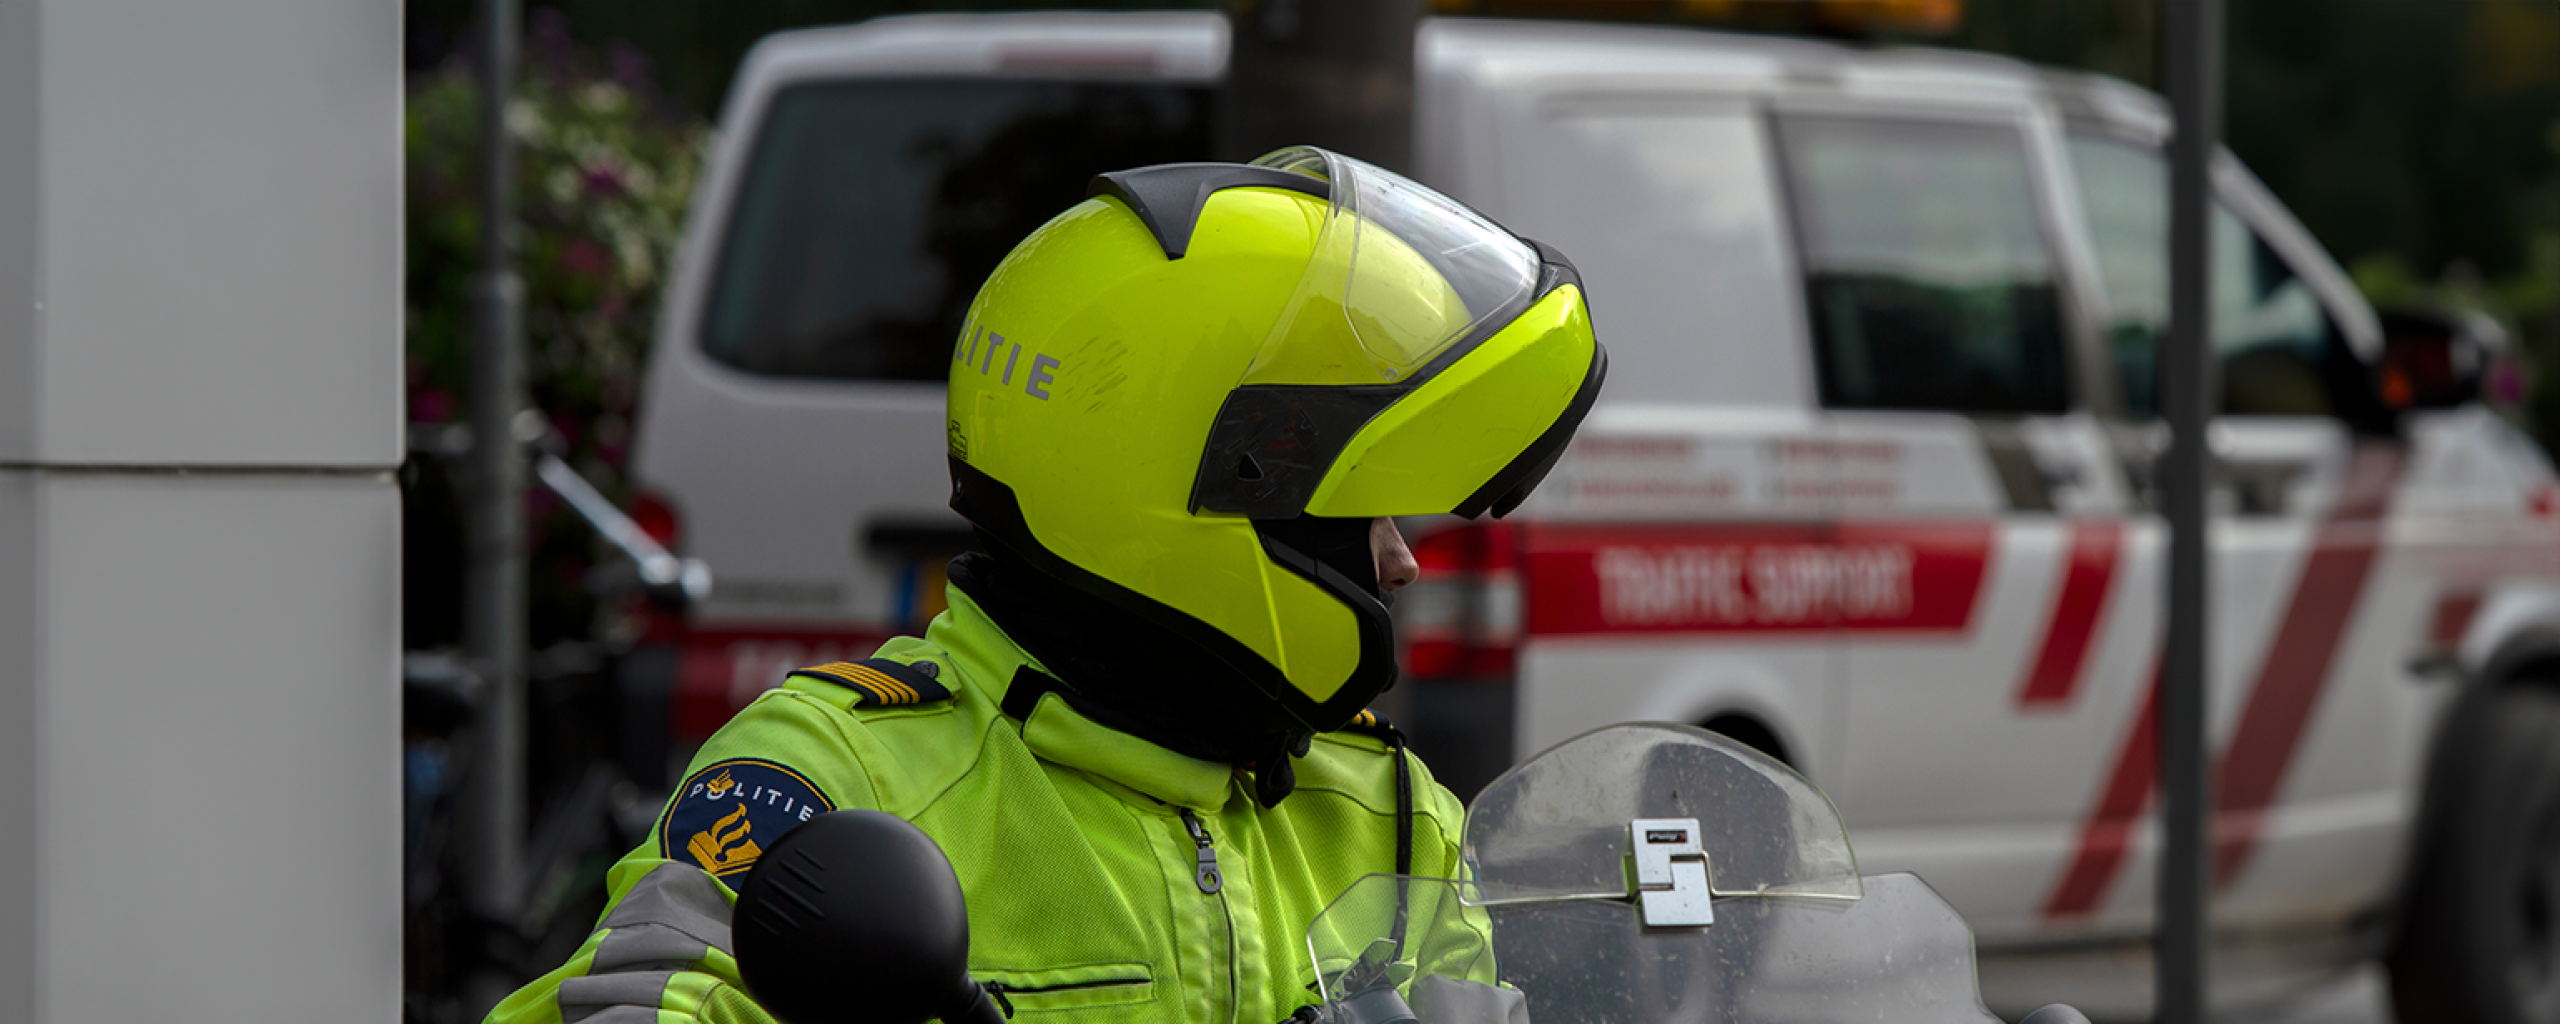 Een politieagent op de motor en gele helm op kijkt achterom